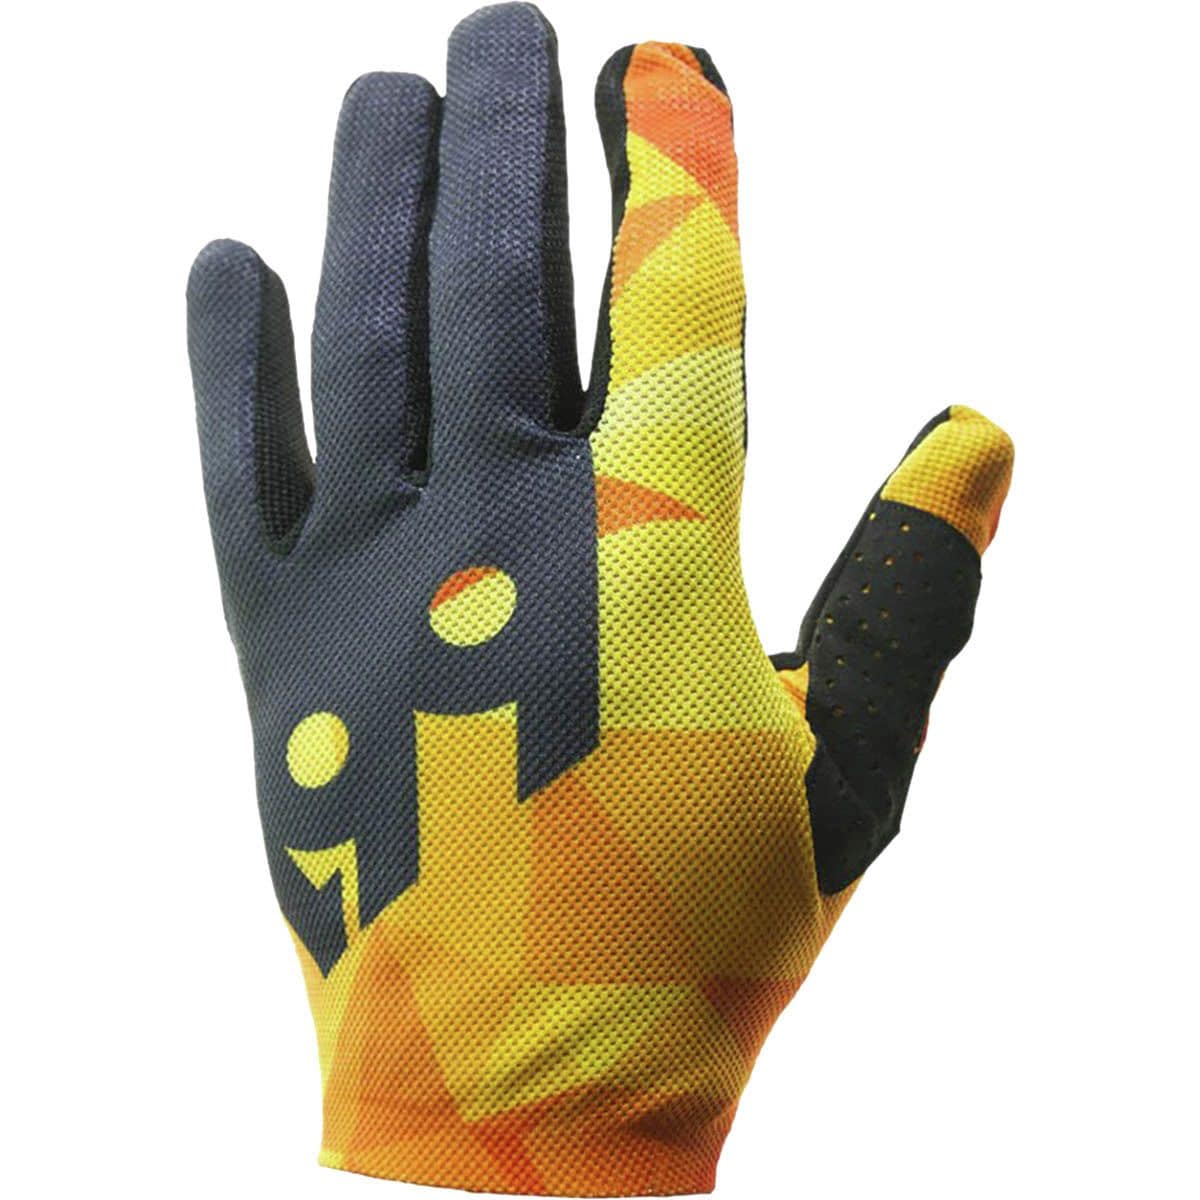 Six Six One Raji Glove - Men's